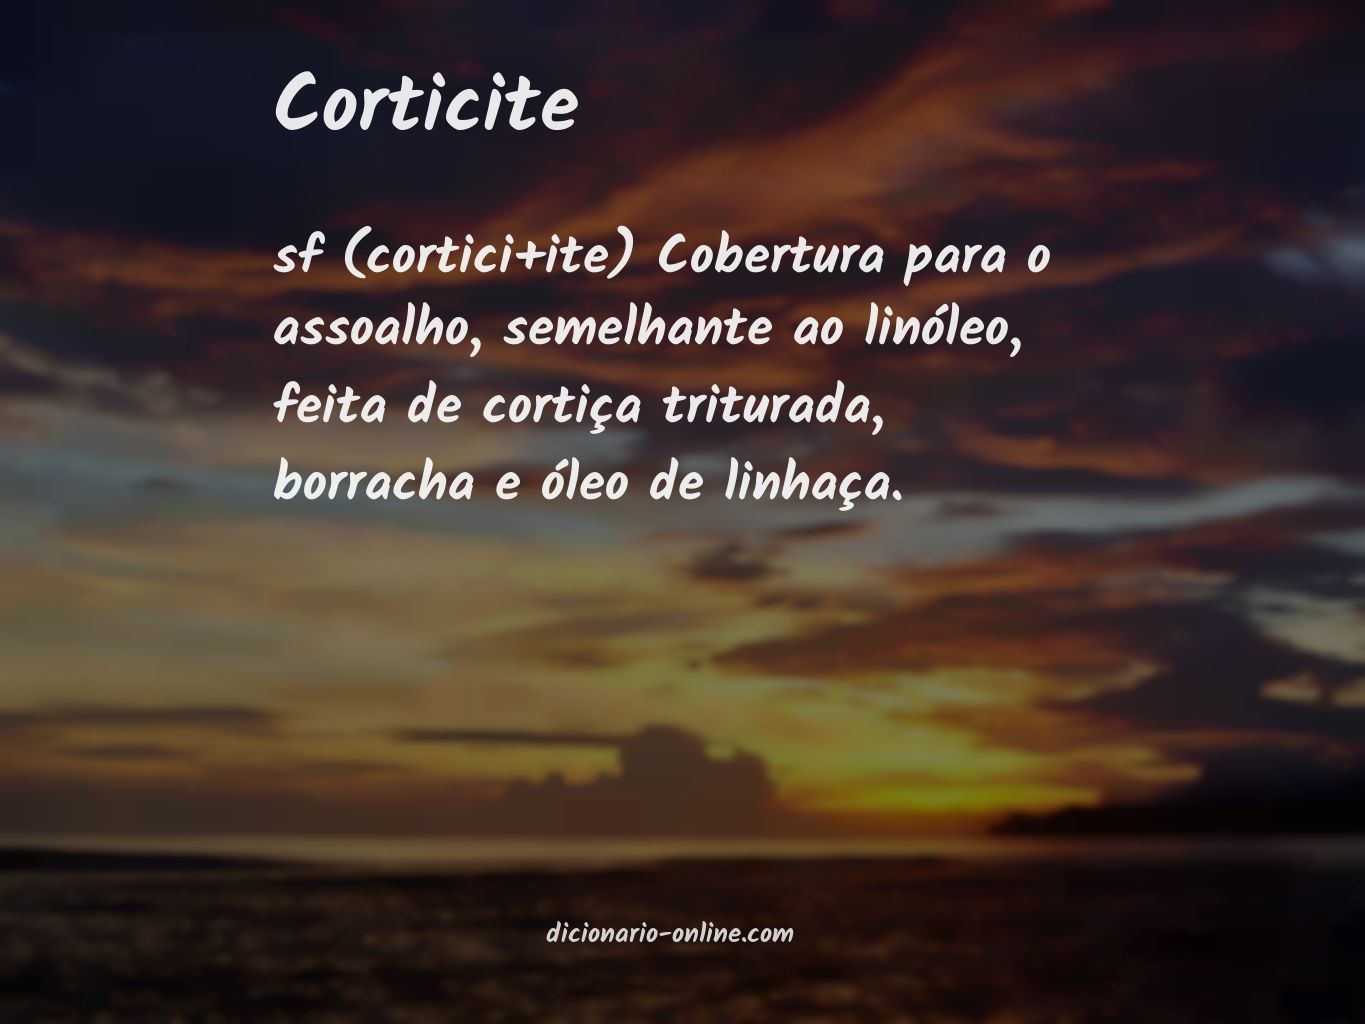 Significado de corticite